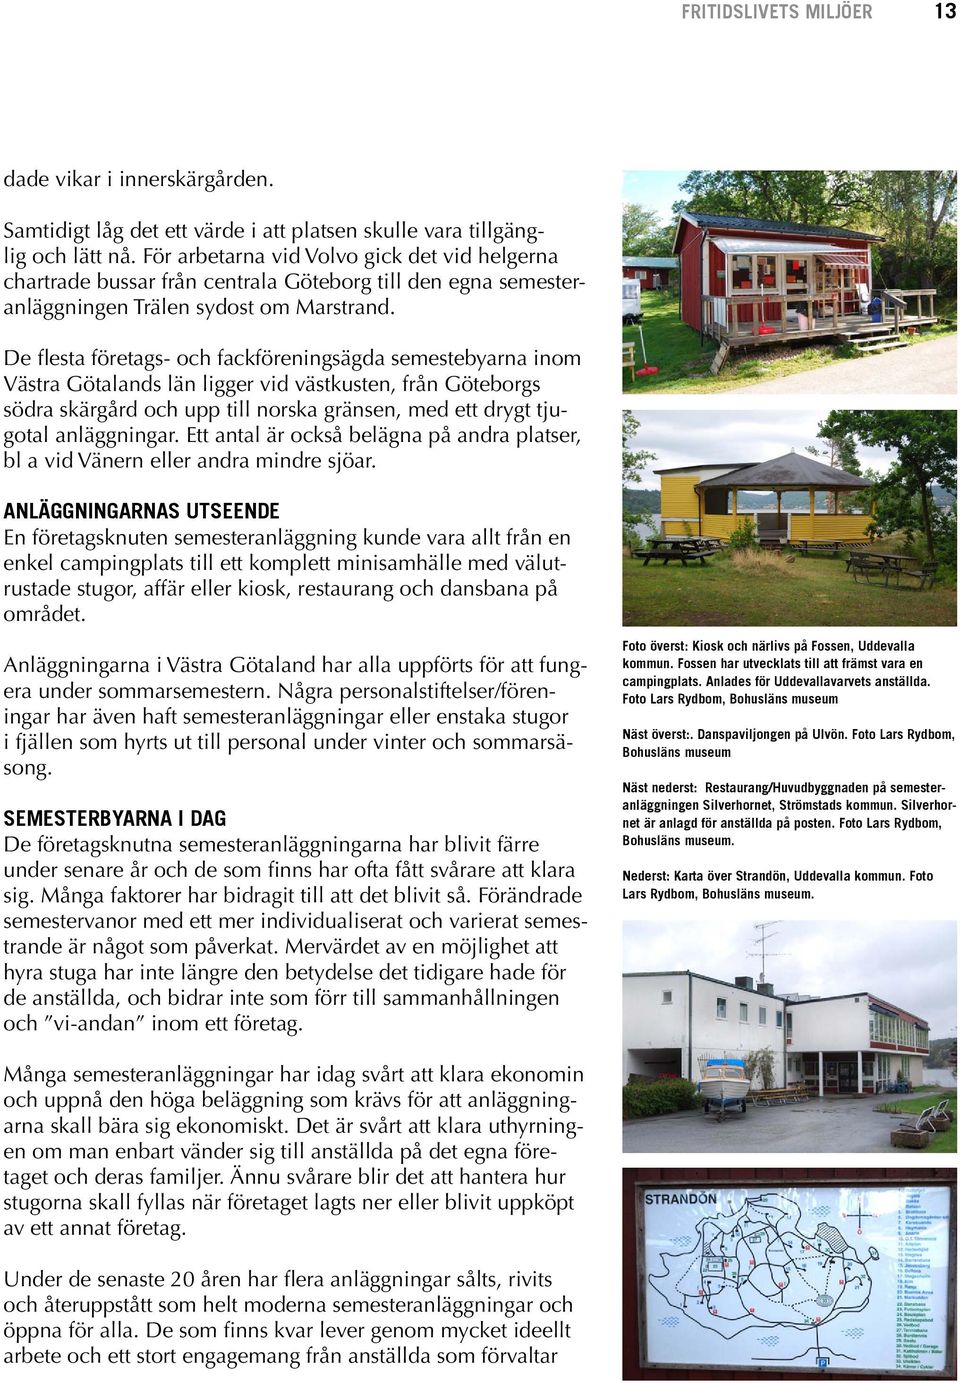 De flesta företags- och fackföreningsägda semestebyarna inom Västra Götalands län ligger vid västkusten, från Göteborgs södra skärgård och upp till norska gränsen, med ett drygt tjugotal anläggningar.